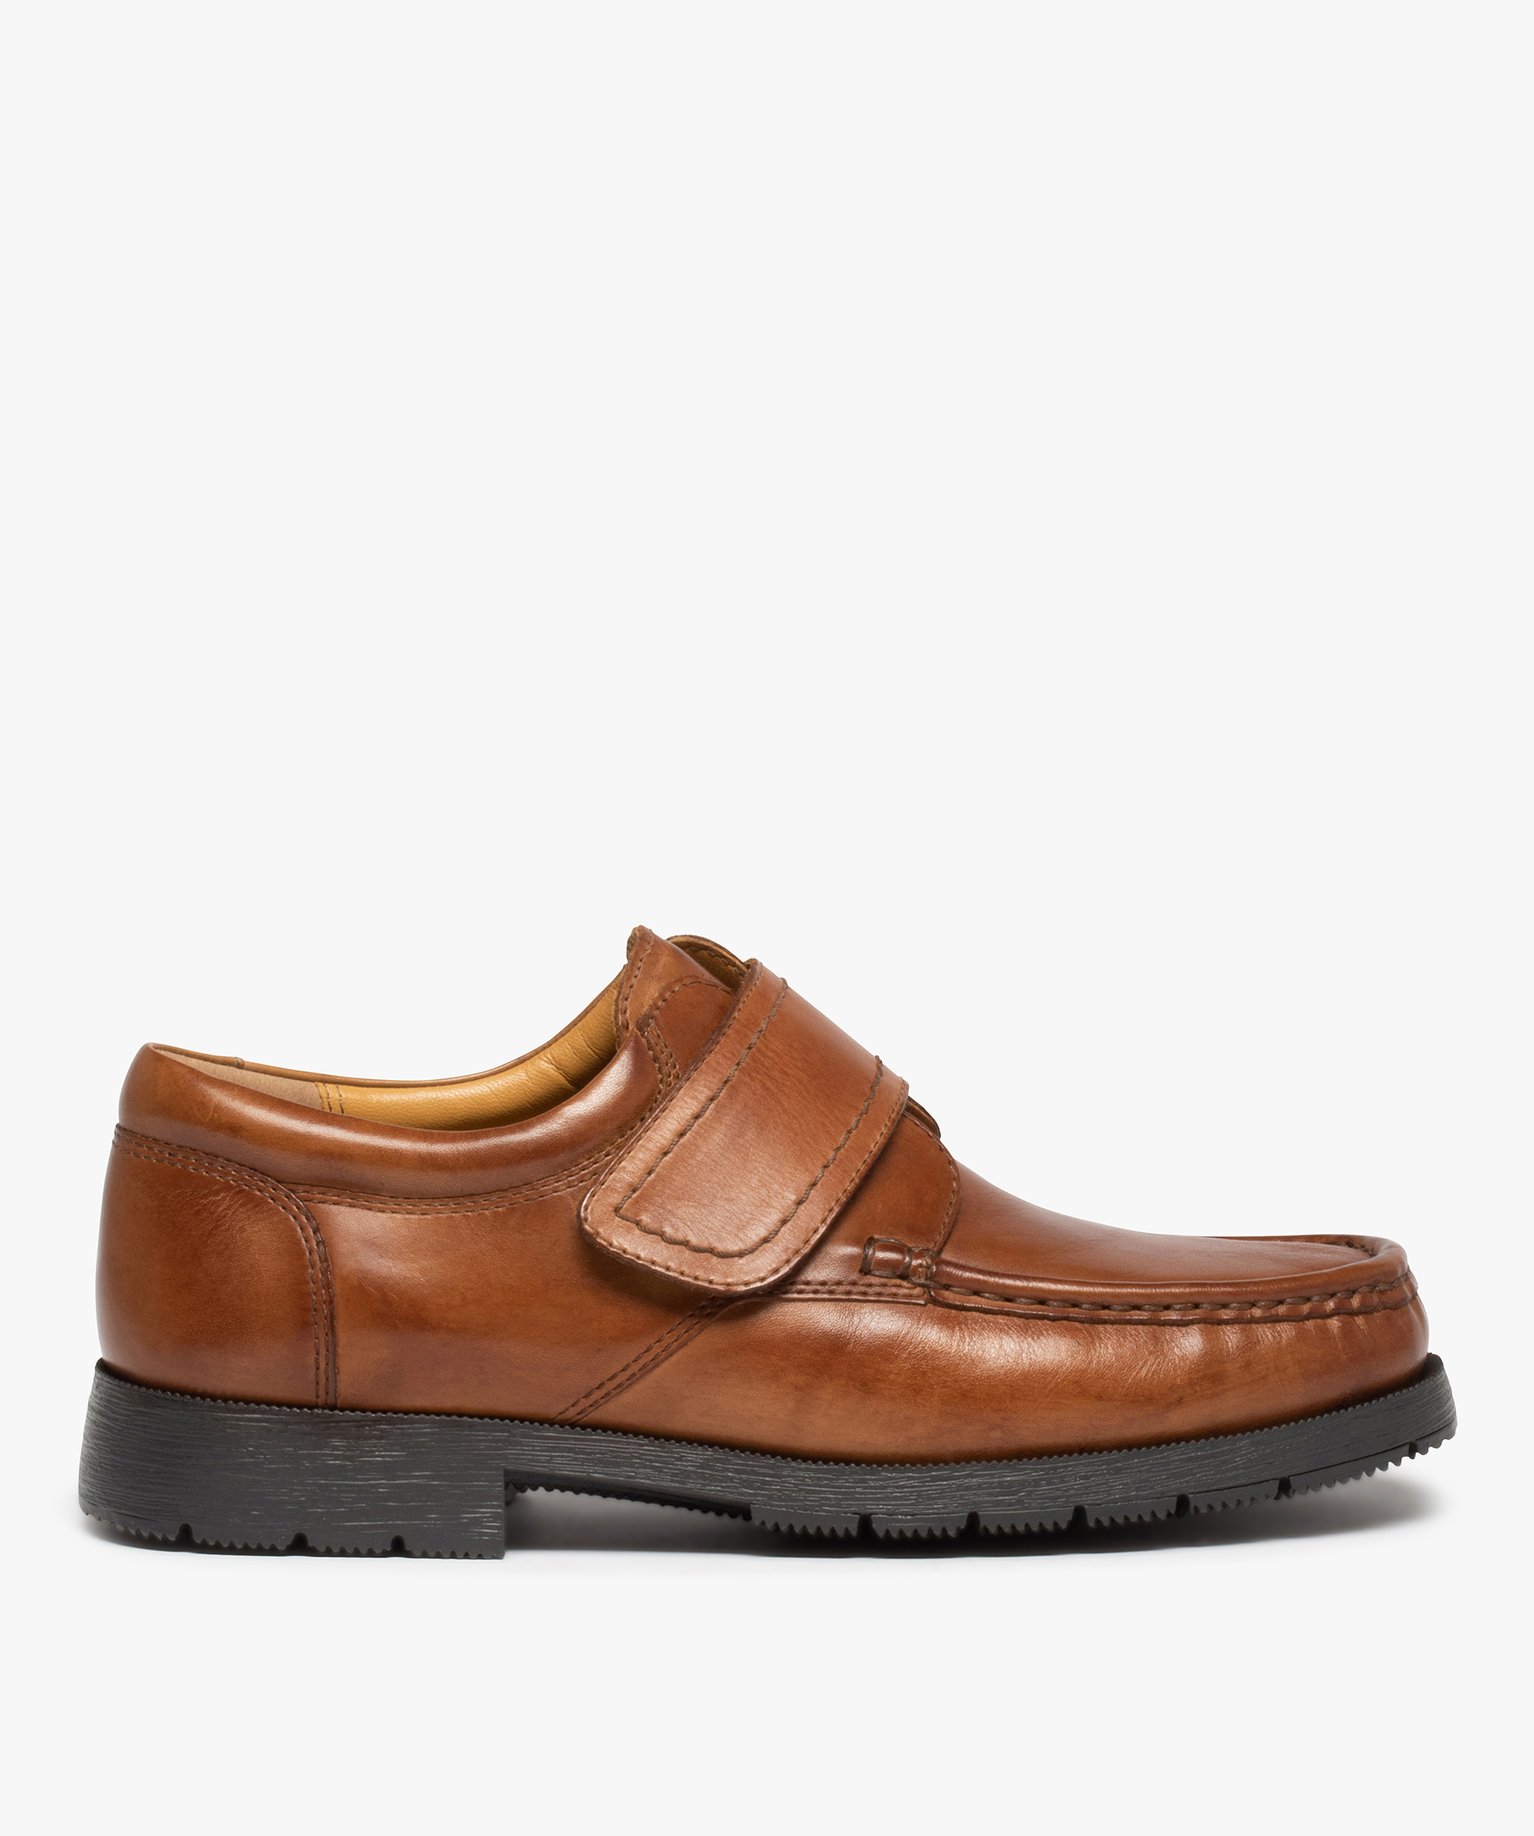 chaussures bateau homme confort dessus cuir uni brun